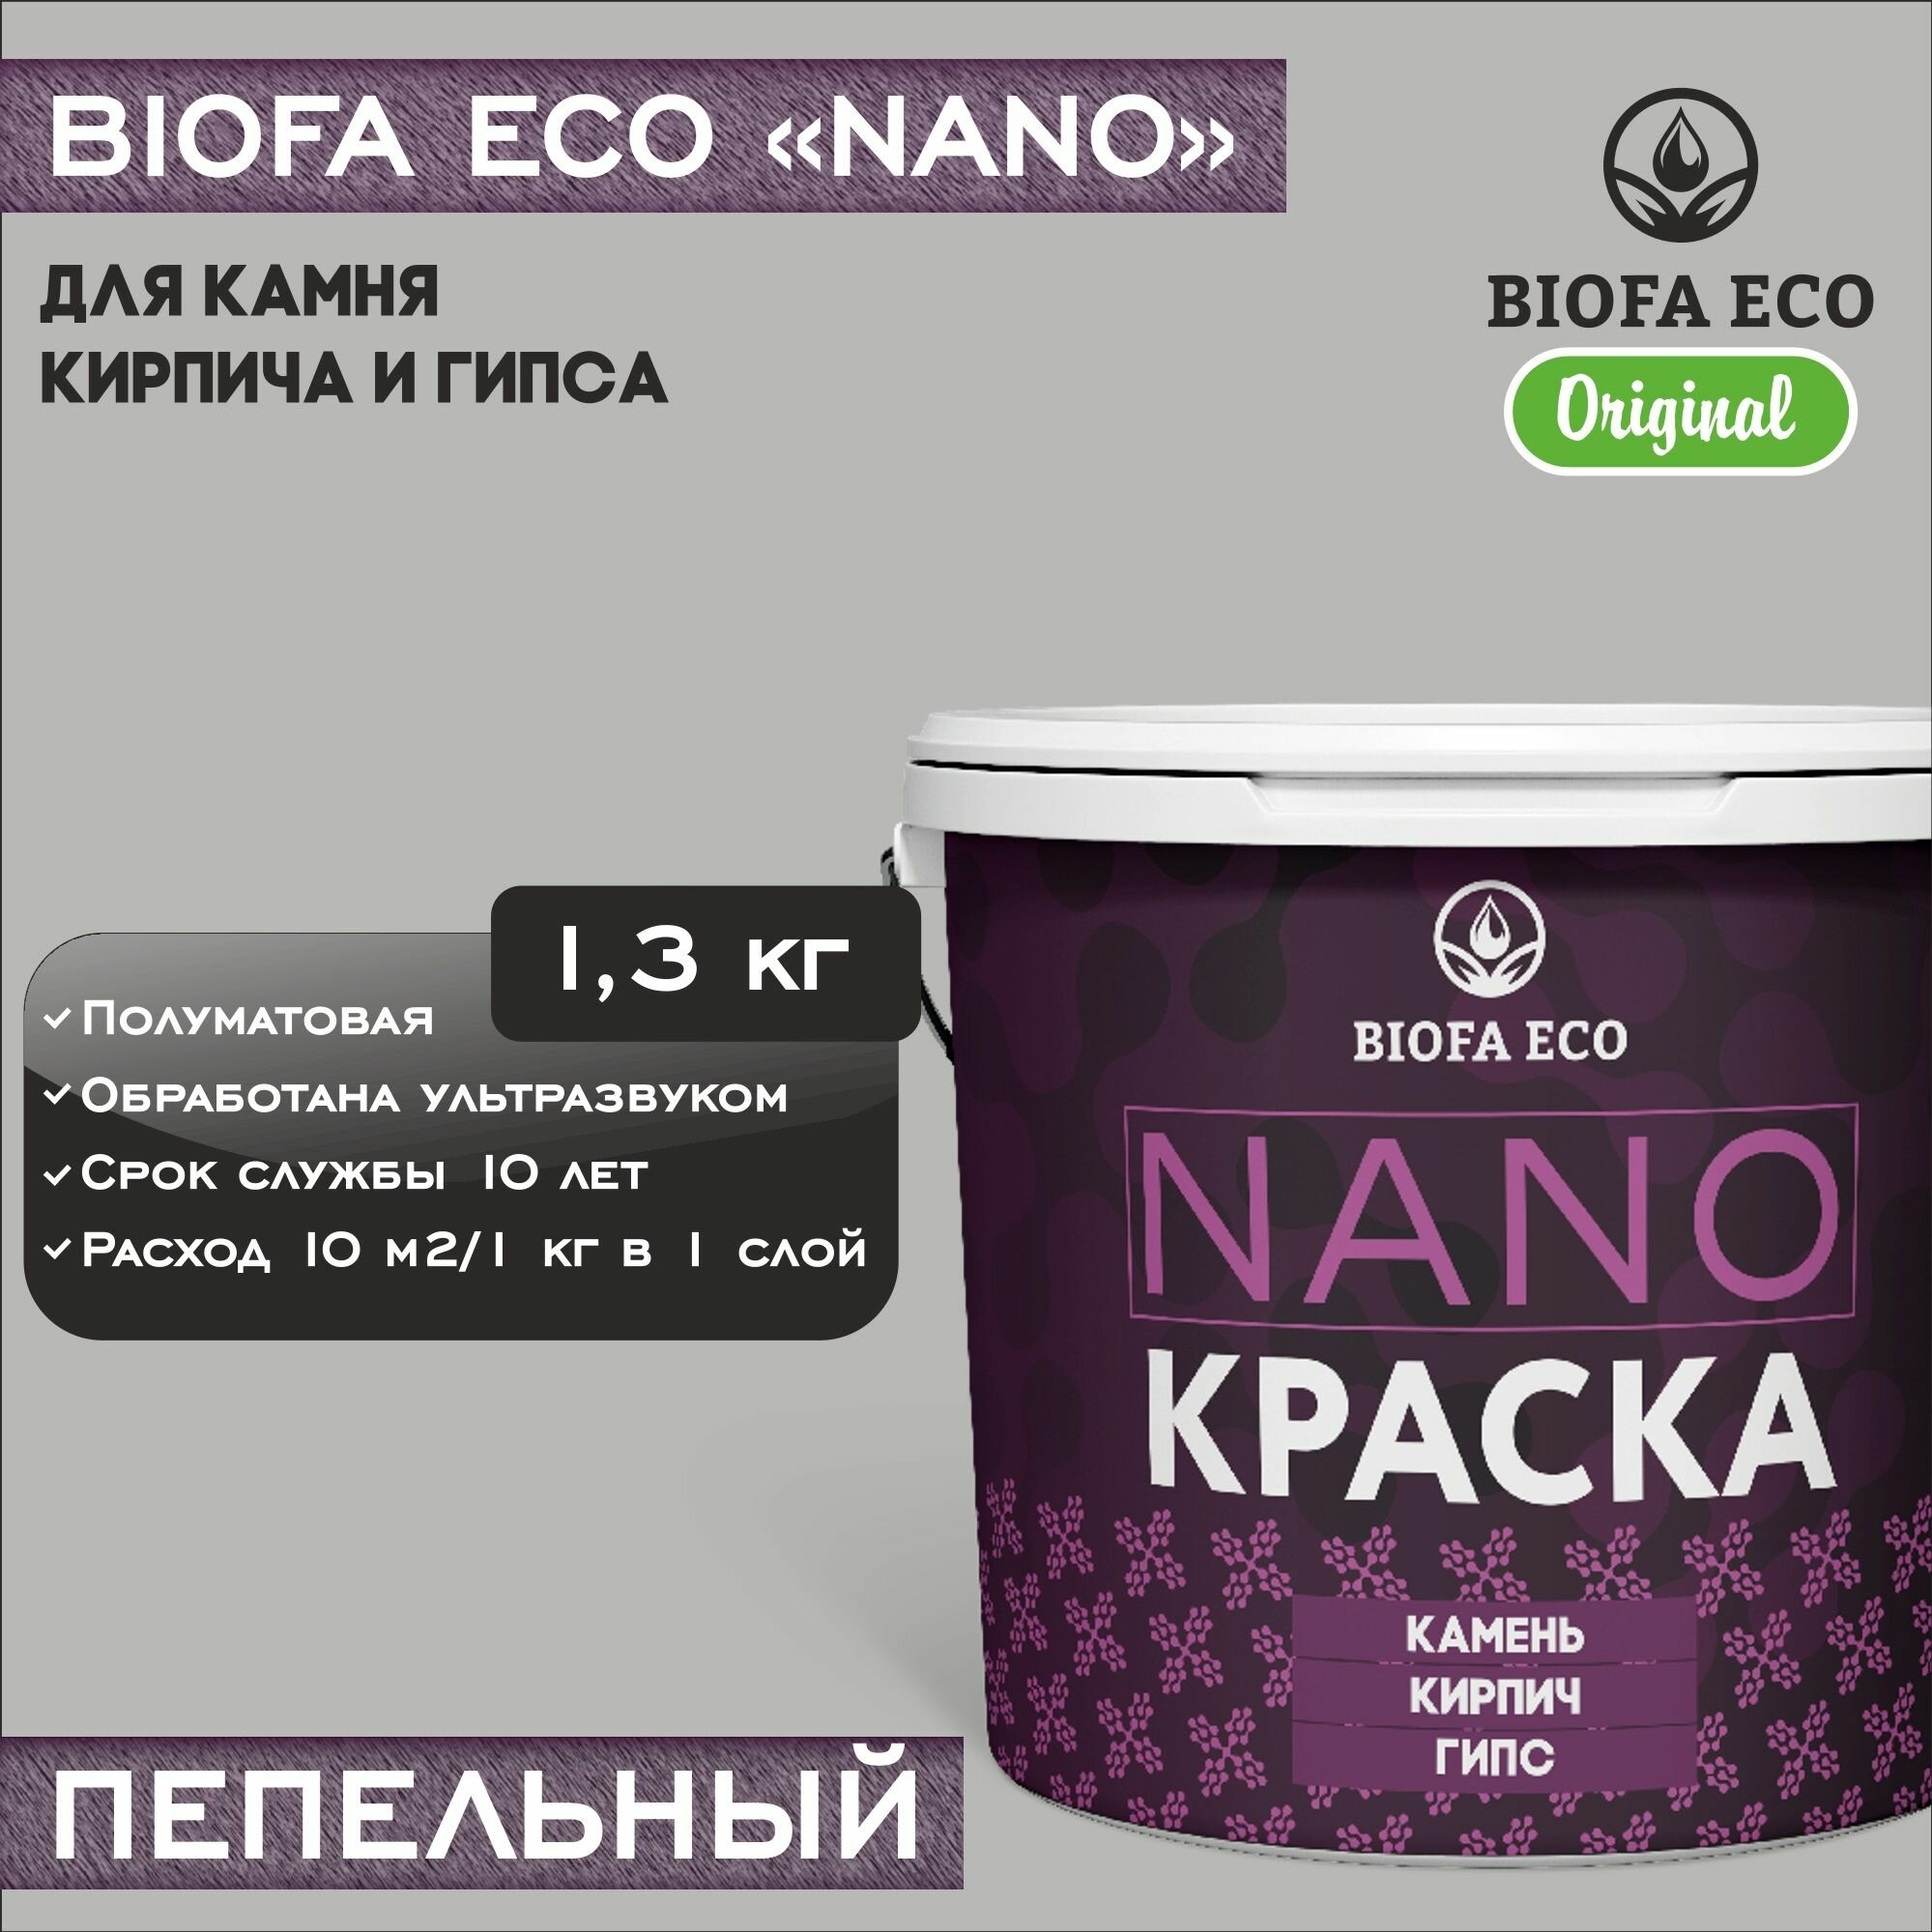 Краска BIOFA ECO NANO для камня, кирпича и гипса, адгезионная, полуматовая, цвет пепельный, 1,3 кг